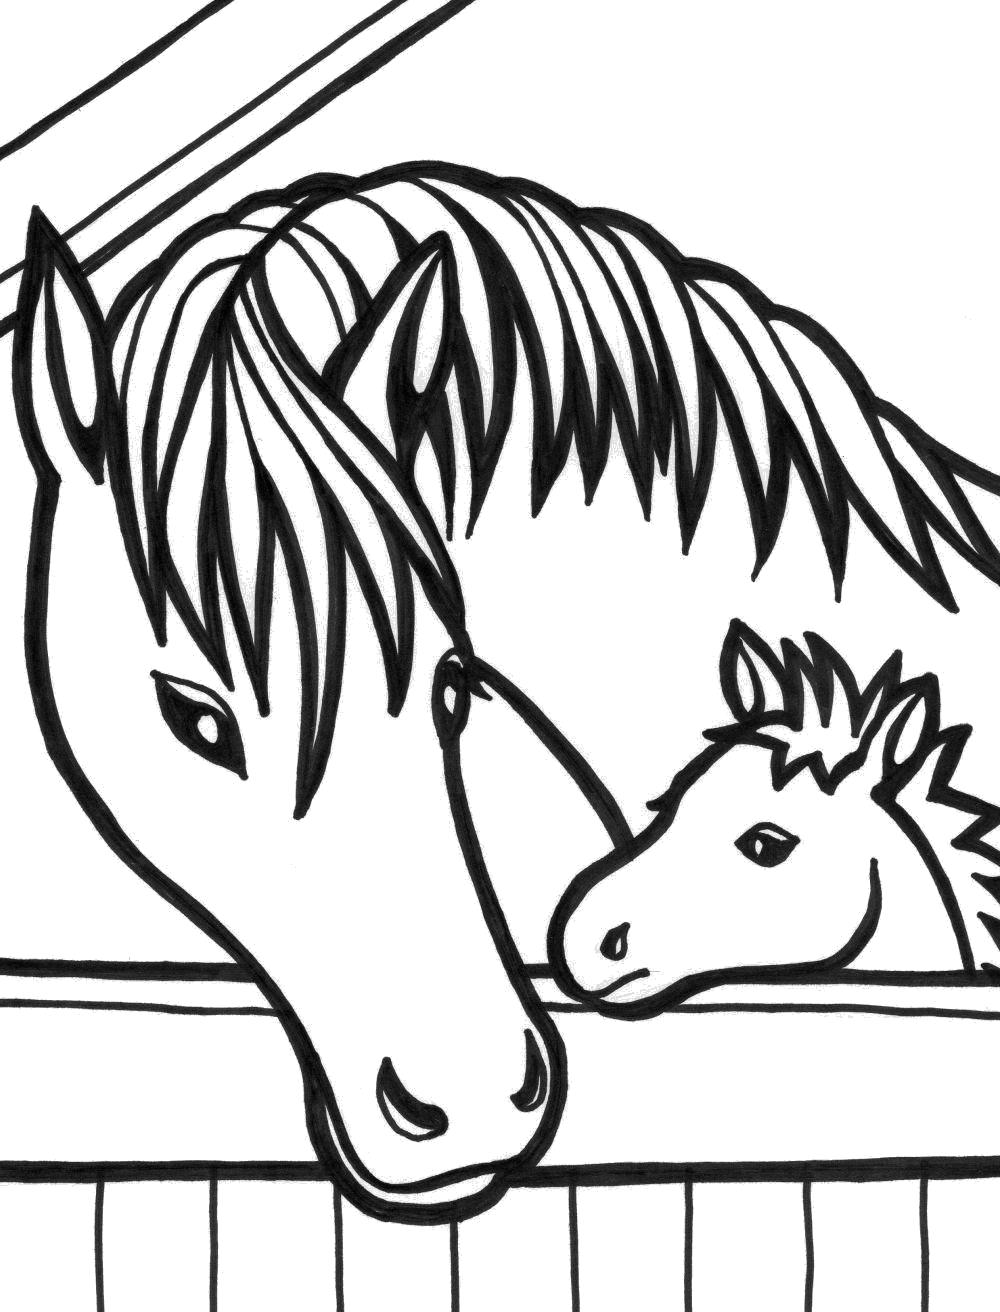 Название: Раскраска Рисунки лошадей. Категория: Домашние животные. Теги: Лошадь.